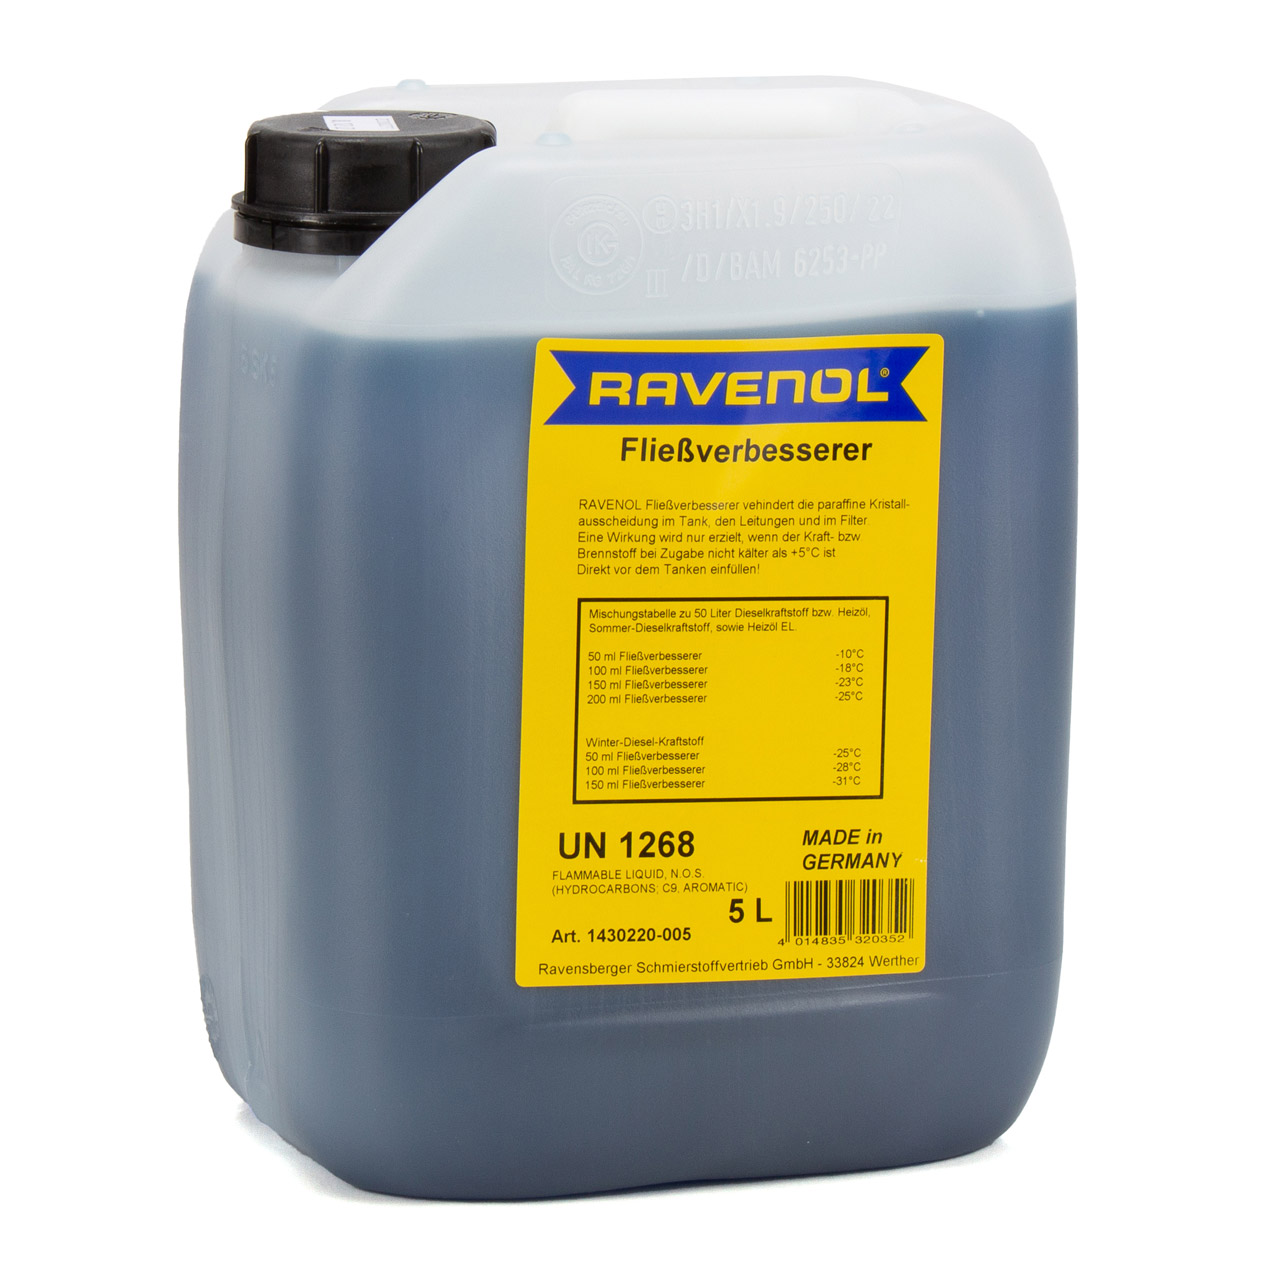 10 Liter RAVENOL 1430220-005 Fließverbesserer 1:1000 Diesel Heizöl Frostschutz Frost Öl